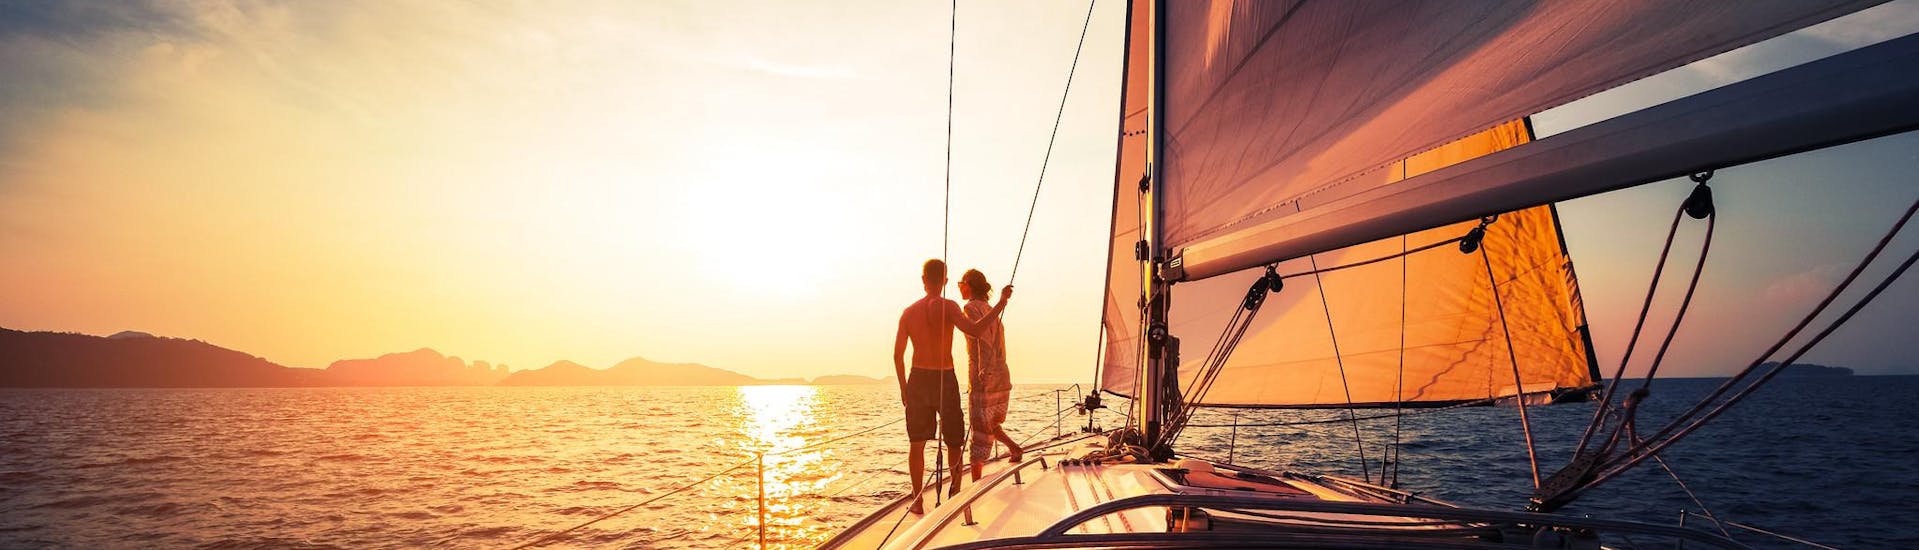 Un couple profite de la vue lors d'une promenade romantique en bateau.